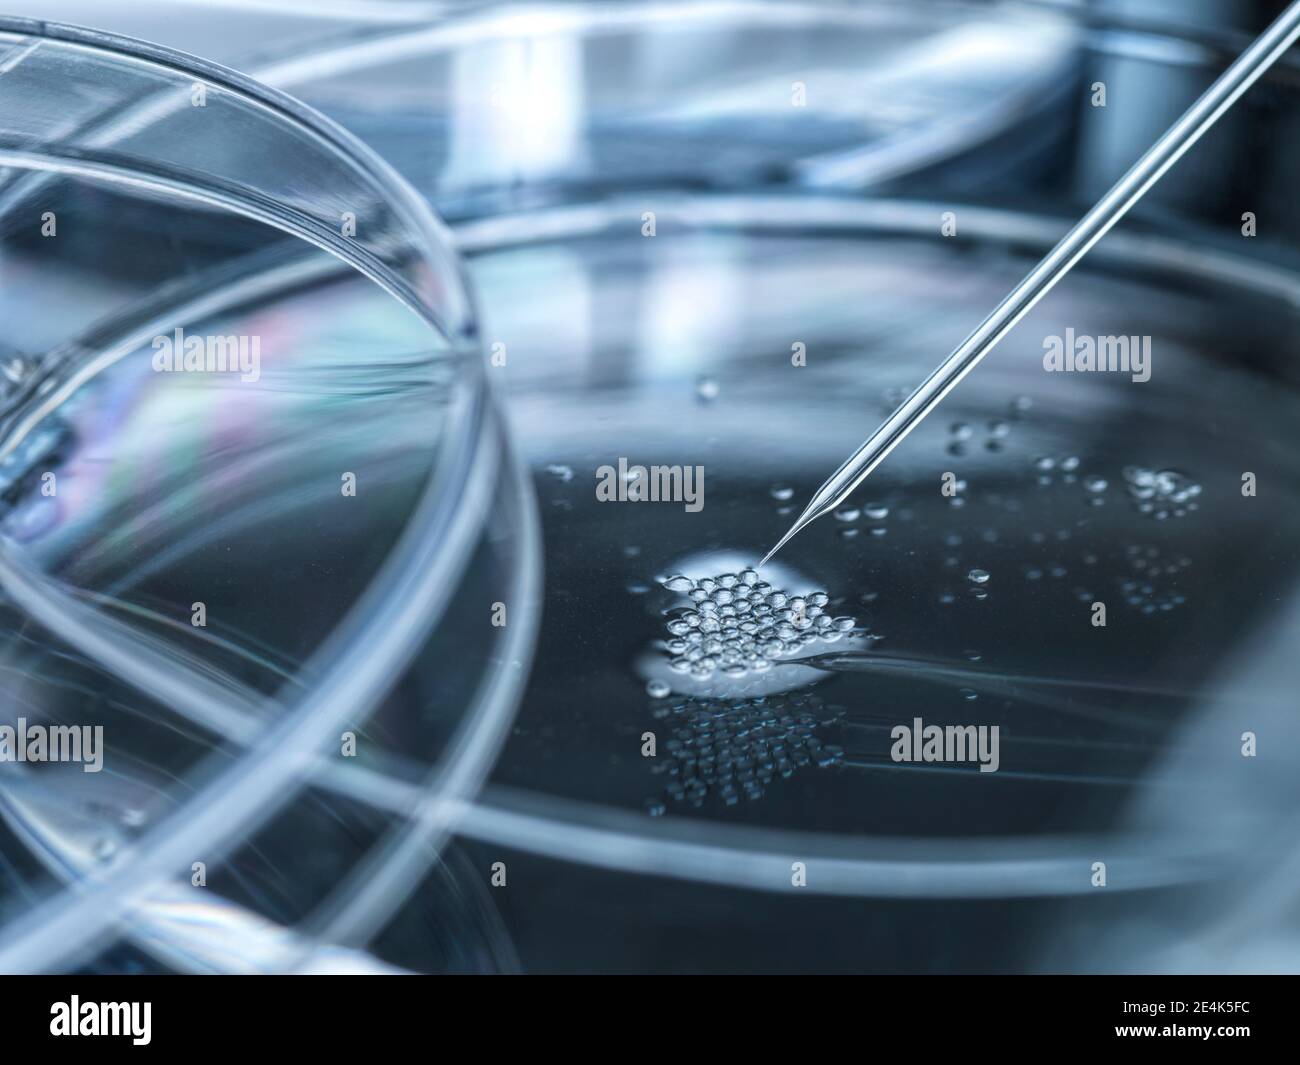 Placa de Petri con células madre embrionarias utilizadas en la clonación y. modificación genética Foto de stock